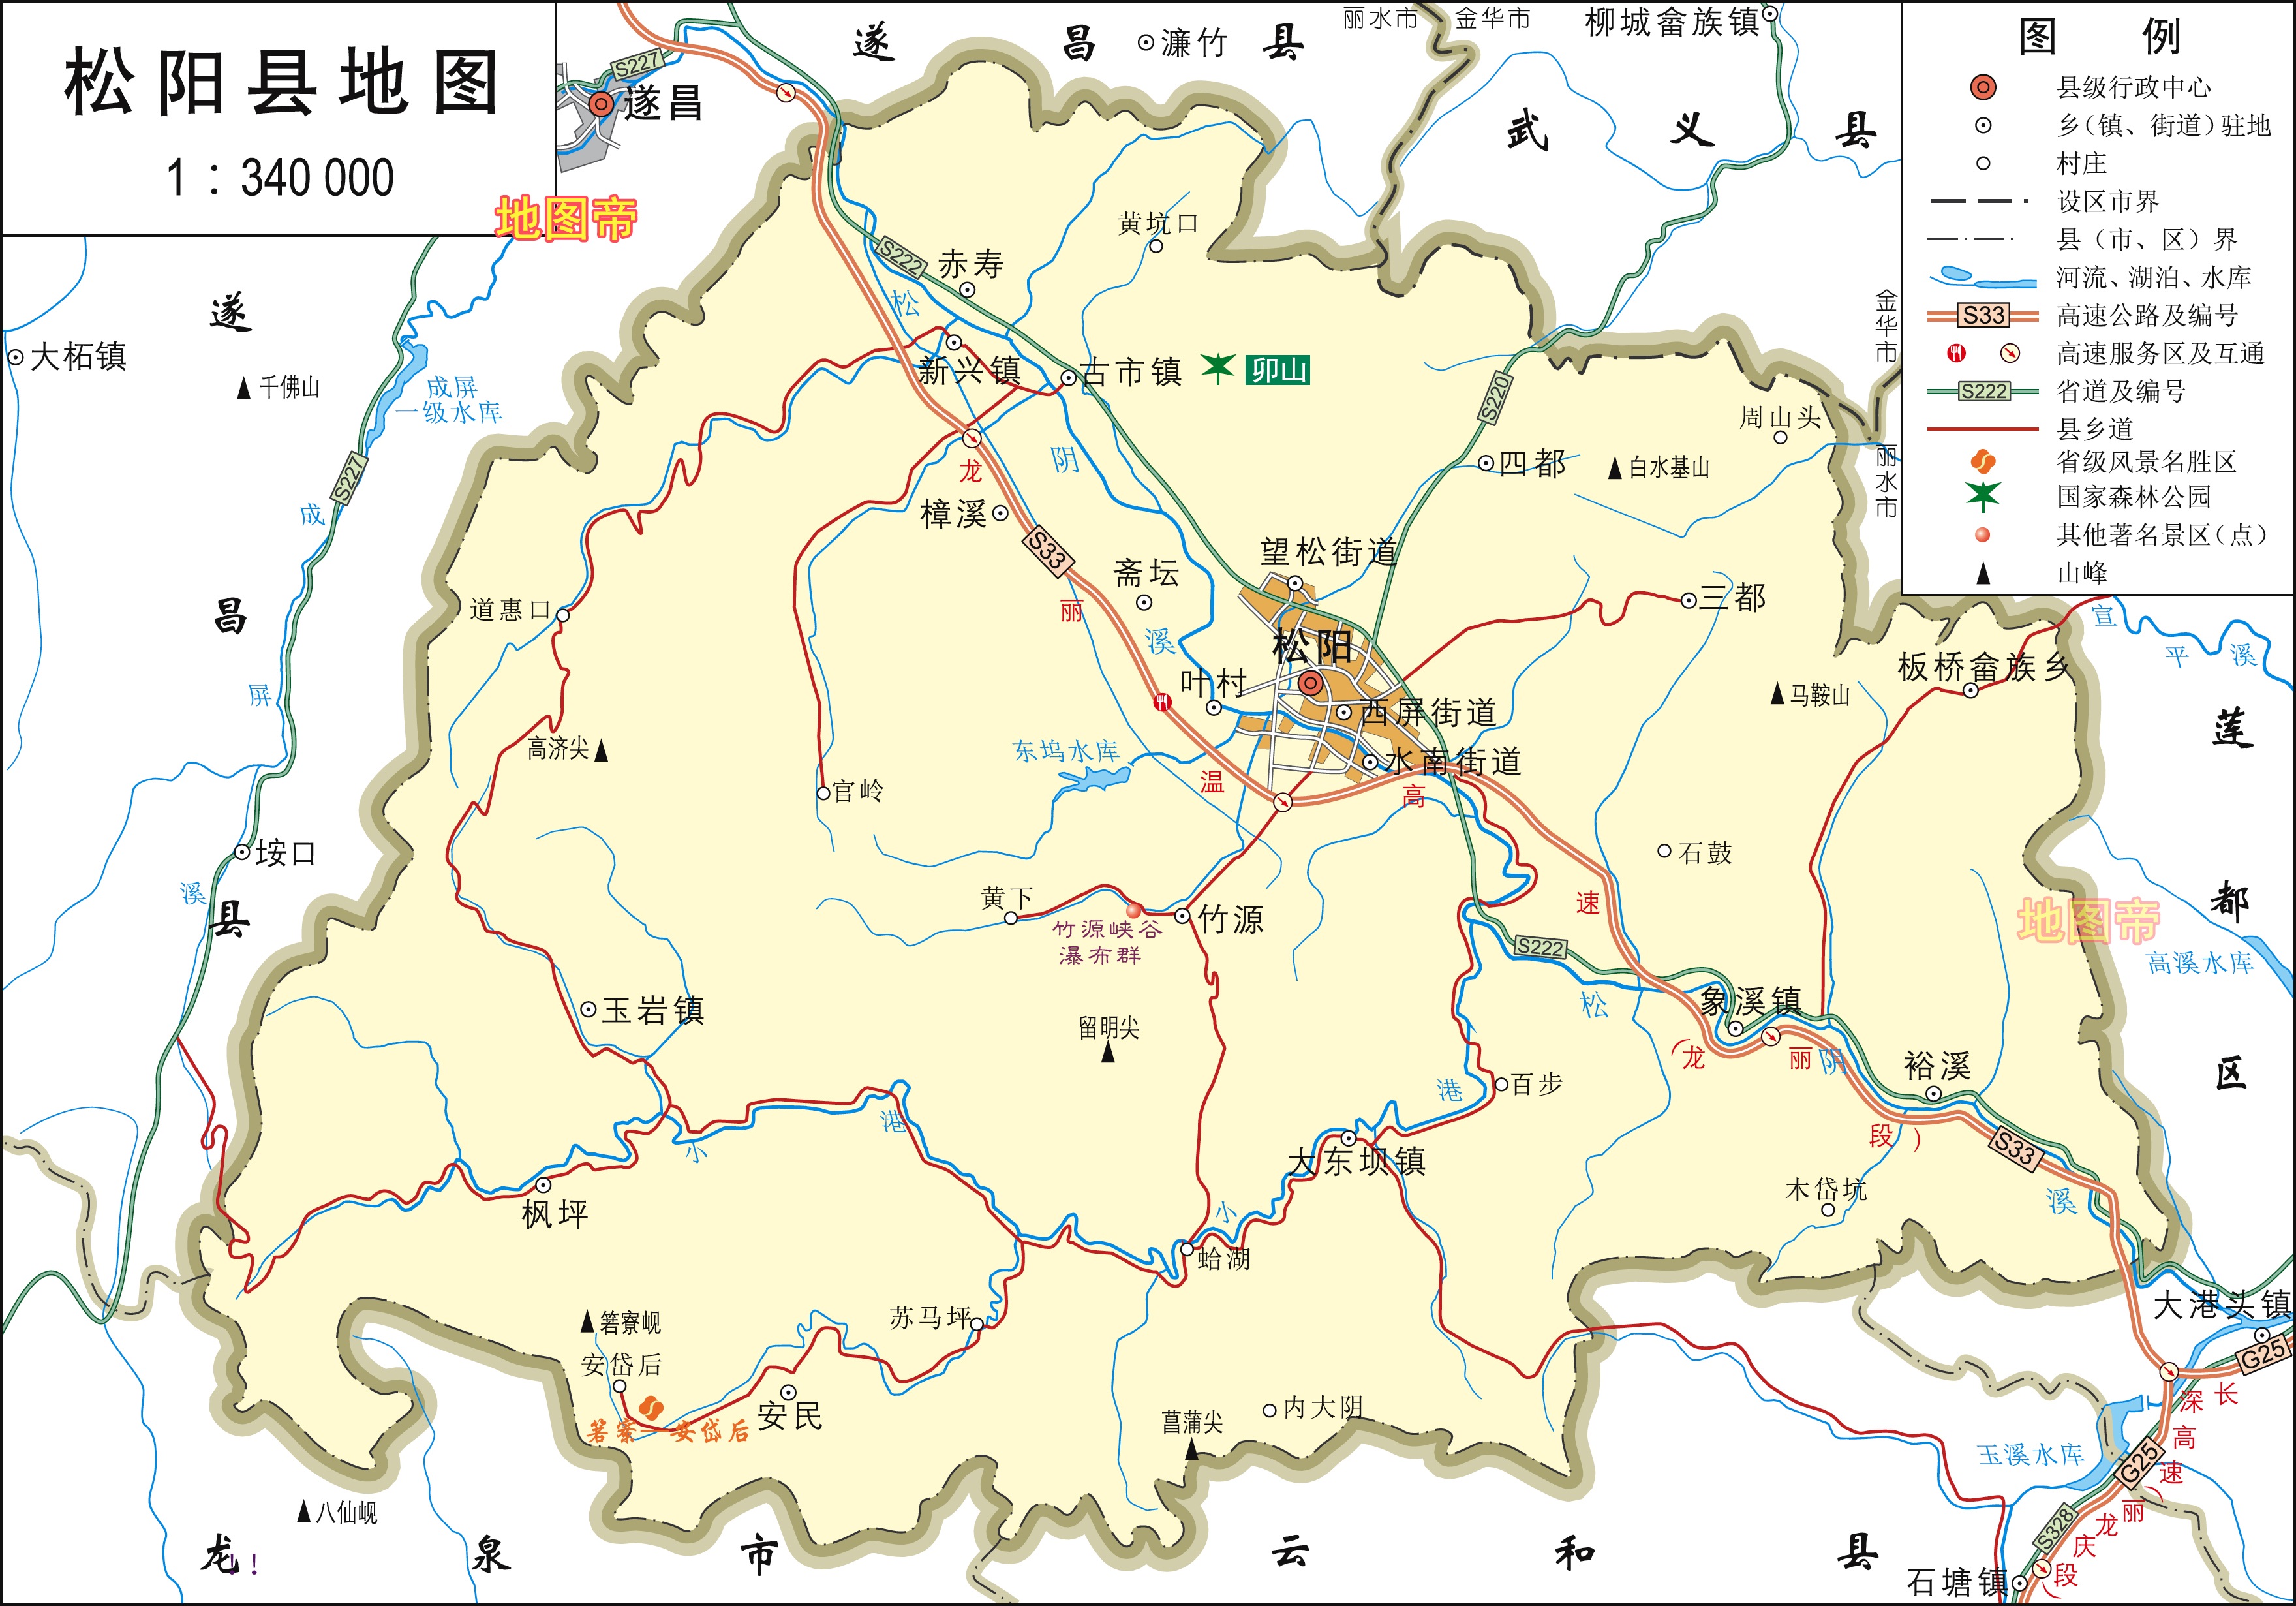 丽水1区7县1市高清地图,浙江陆域面积最大地级市